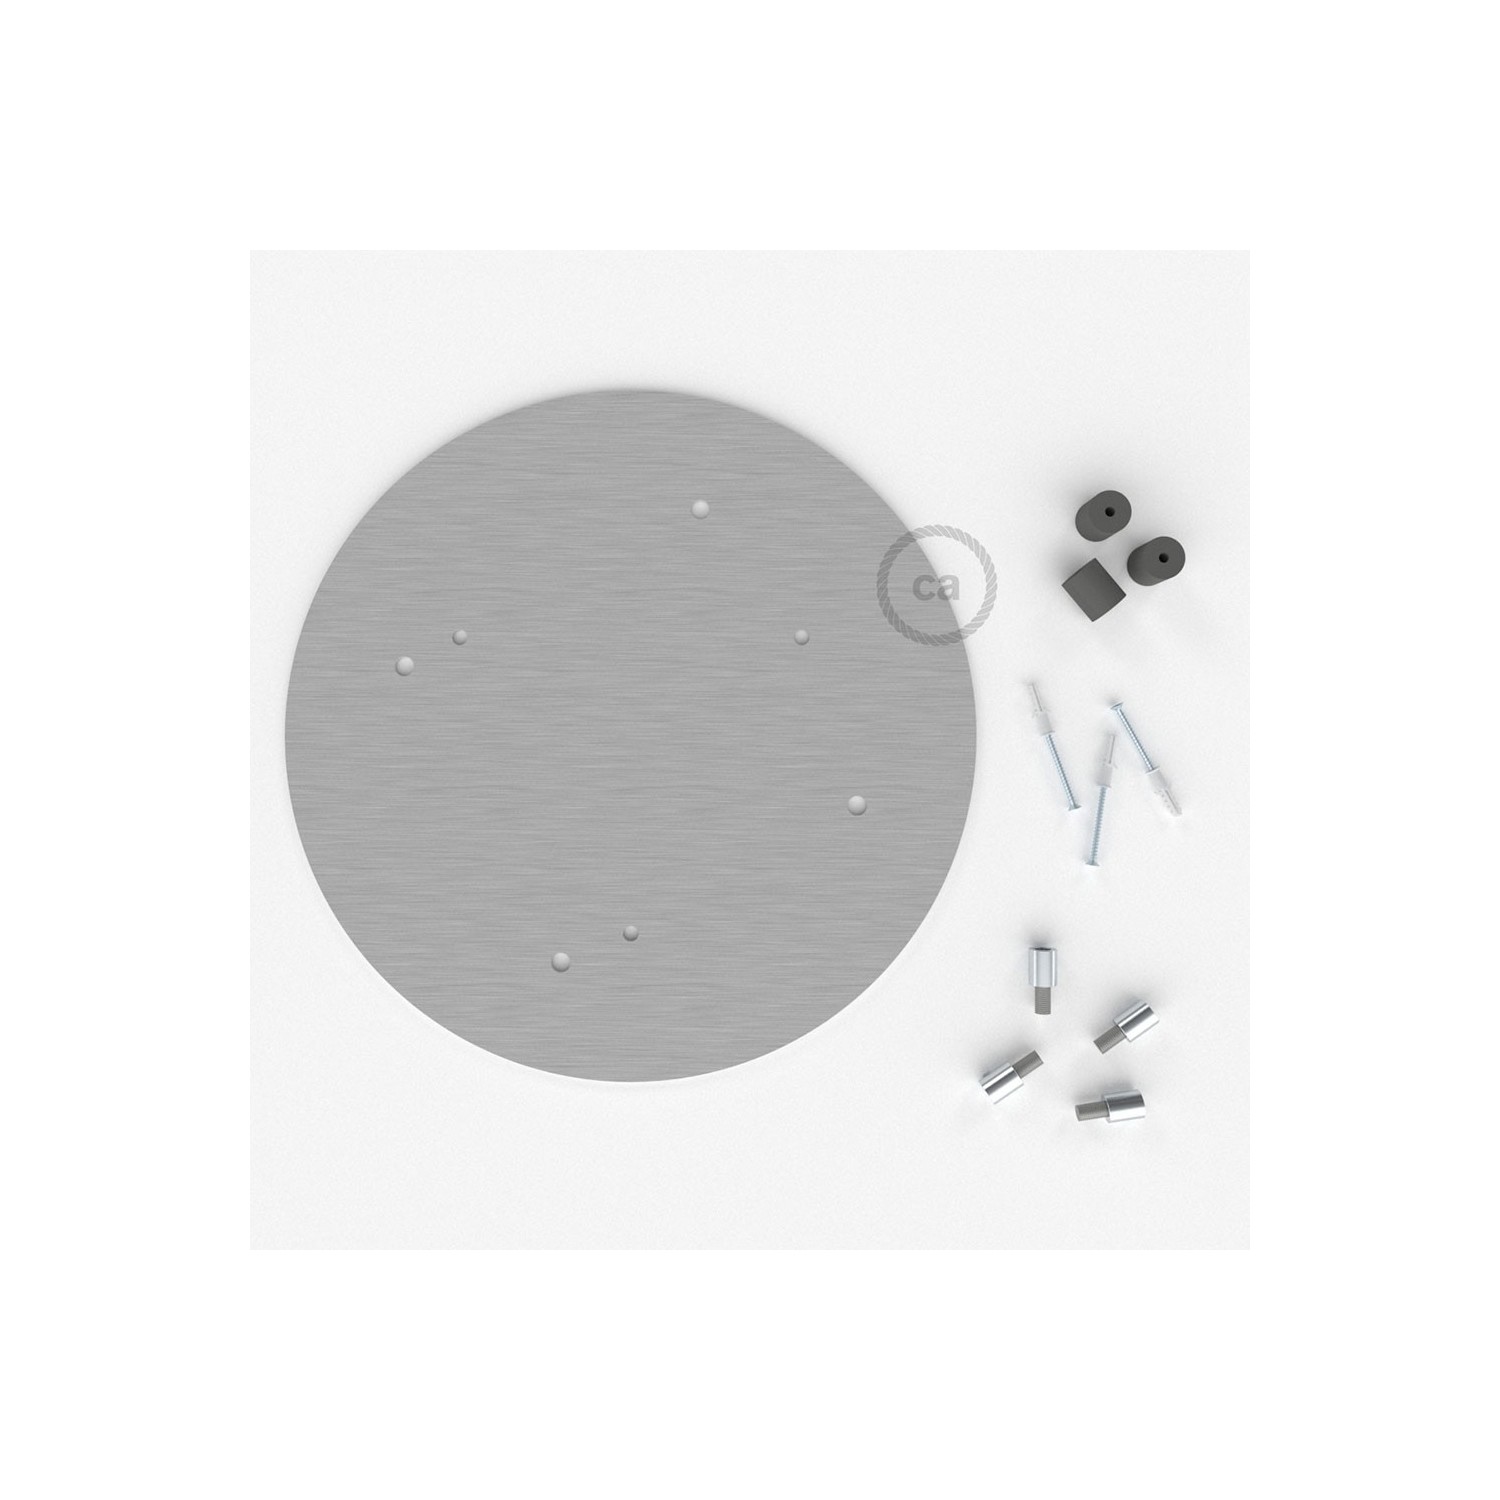 Escudo XXL circular 35cm a 4 agujeros acero satinado completo de accesorios